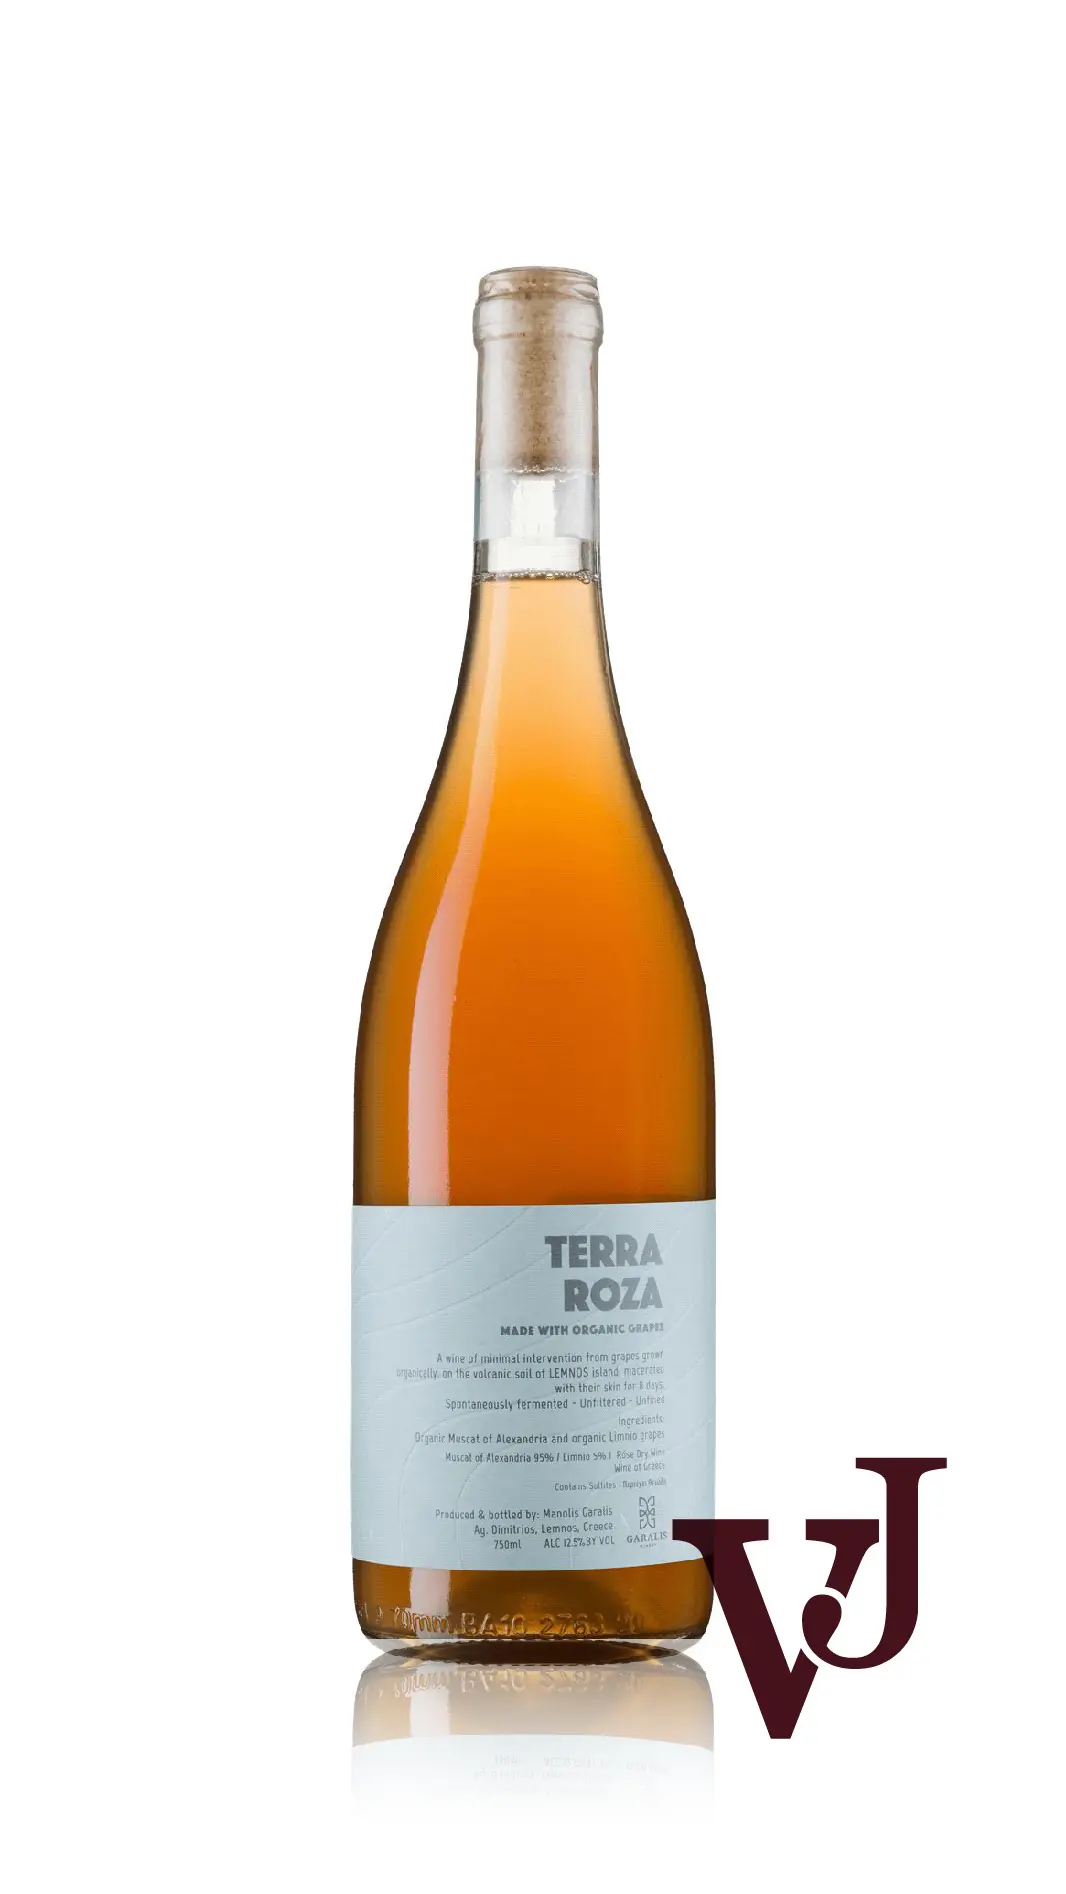 Rosé Vin - Terra Roza Garalis 2021 artikel nummer 7339001 från producenten Garalis från Grekland. - Vinjournalen.se